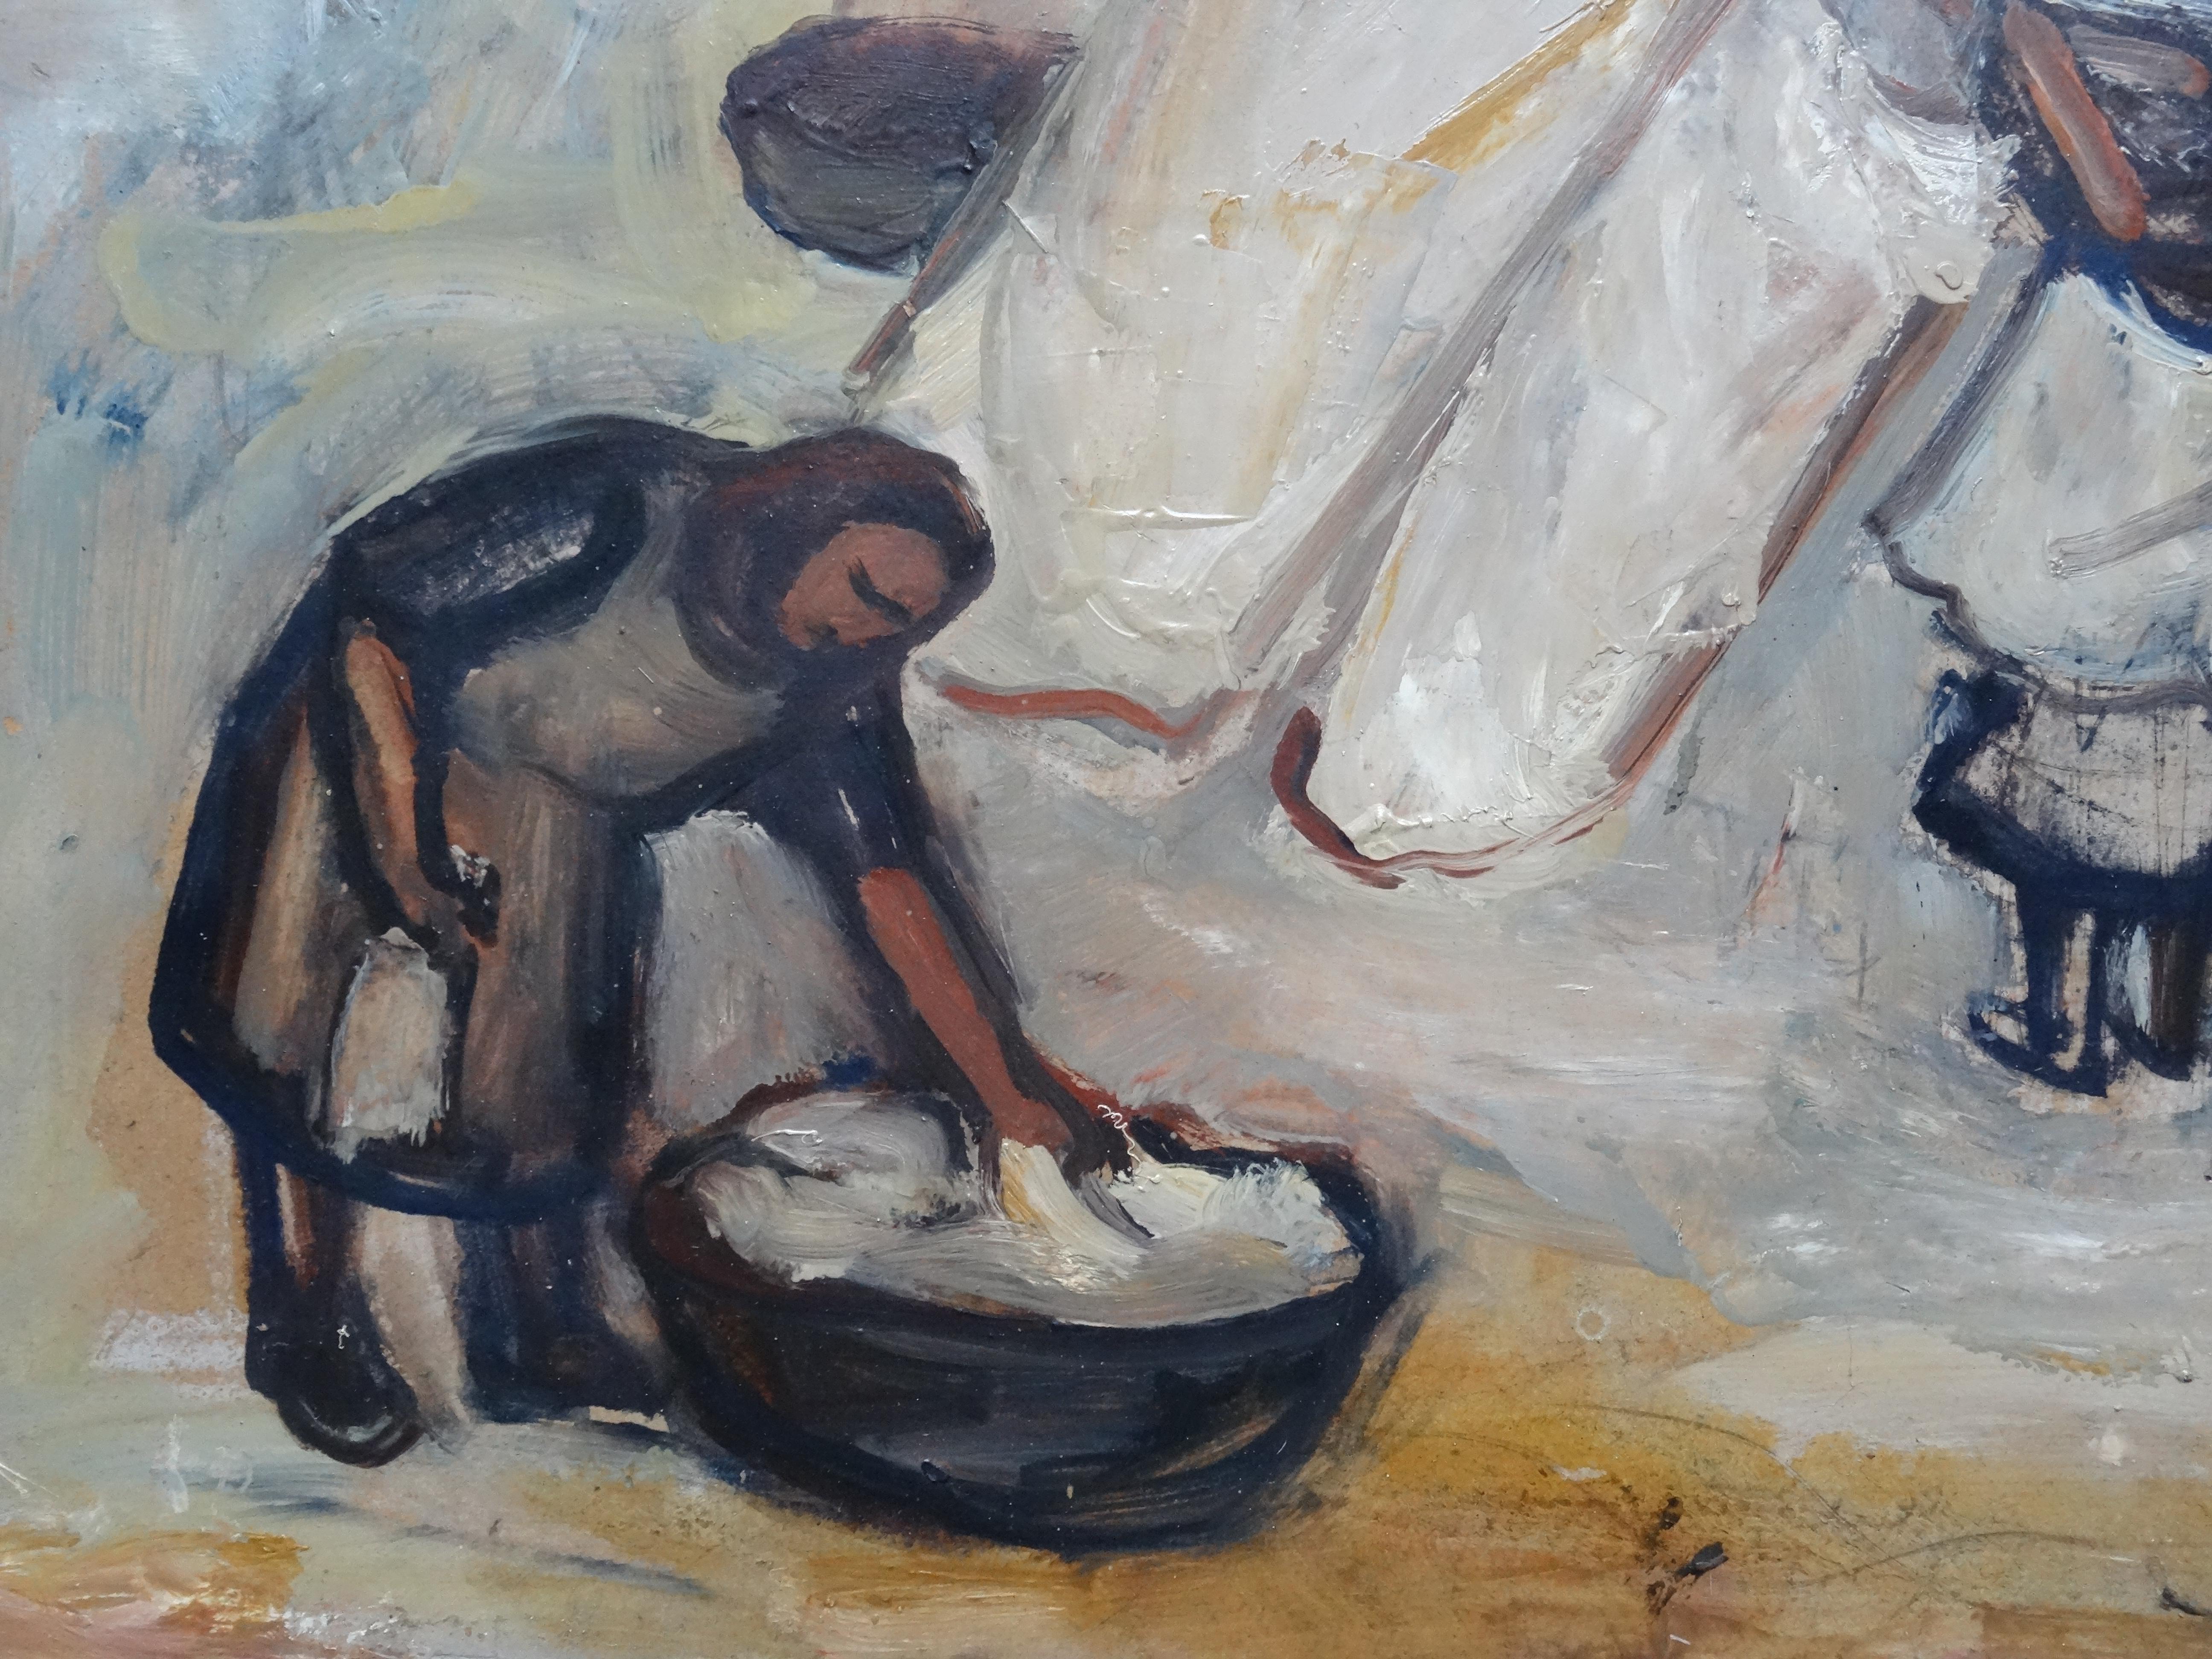 The laundry is drying  1950, huile sur carton, 51x74 cm - Painting de Biruta Baumane